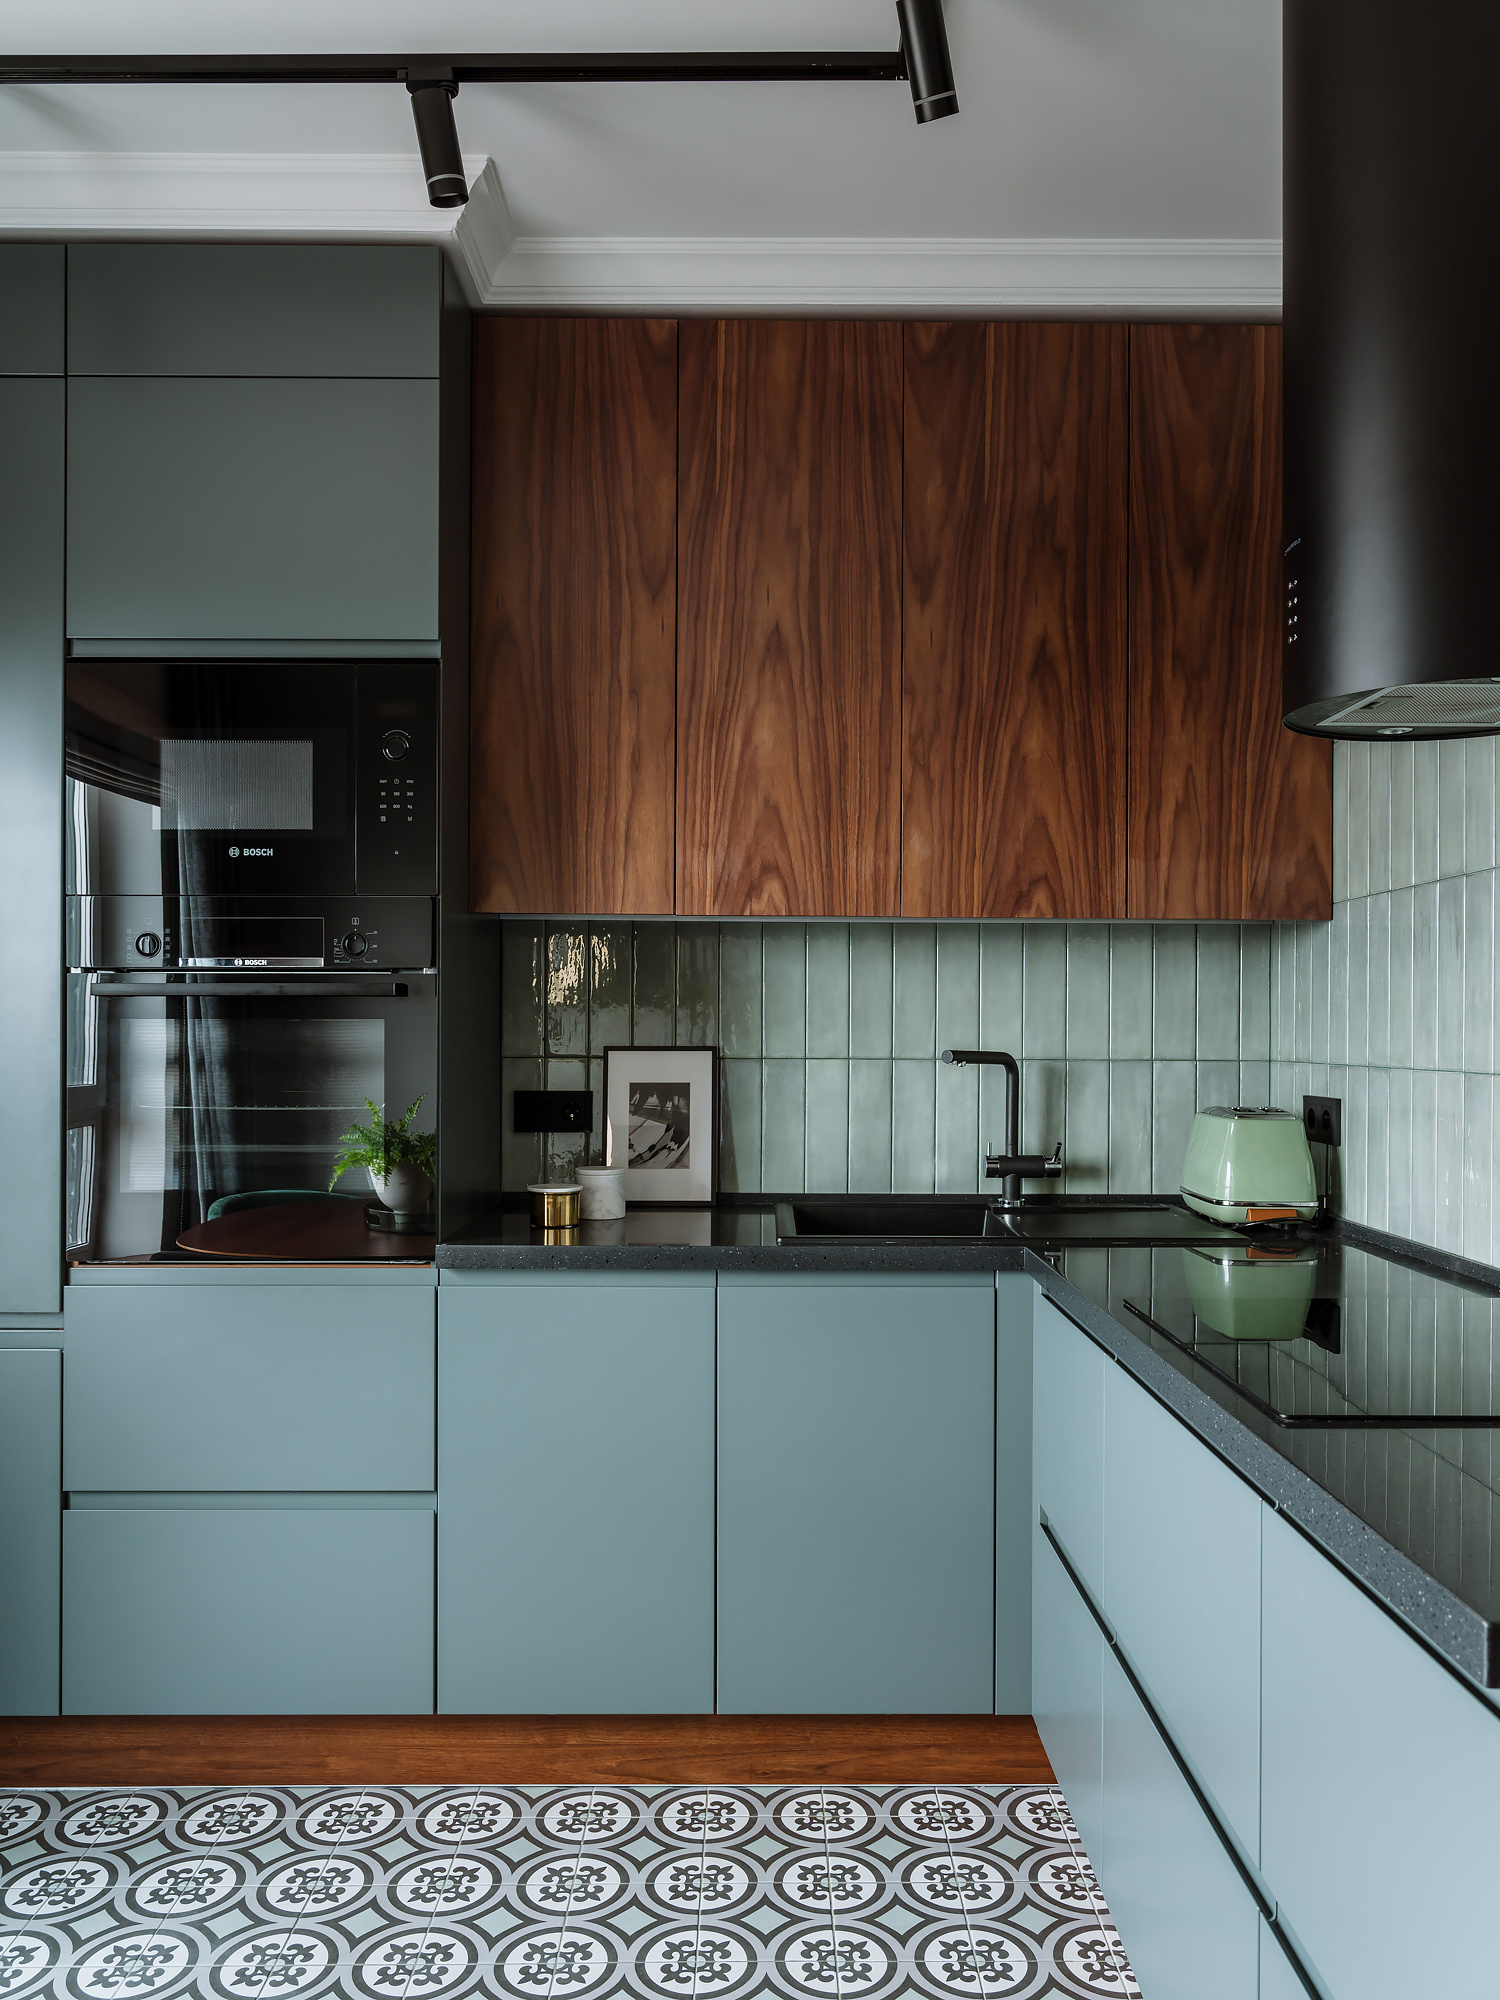 Việc lựa chọn màu gạch ốp backsplash tương đồng với màu sơn tủ bếp là ý tưởng thông minh vì nó có thể kết nối nội thất trong không gian nhỏ, tạo sự hài hòa, ngoài ra màu xanh trong trường hợp này cũng rất mát mắt.